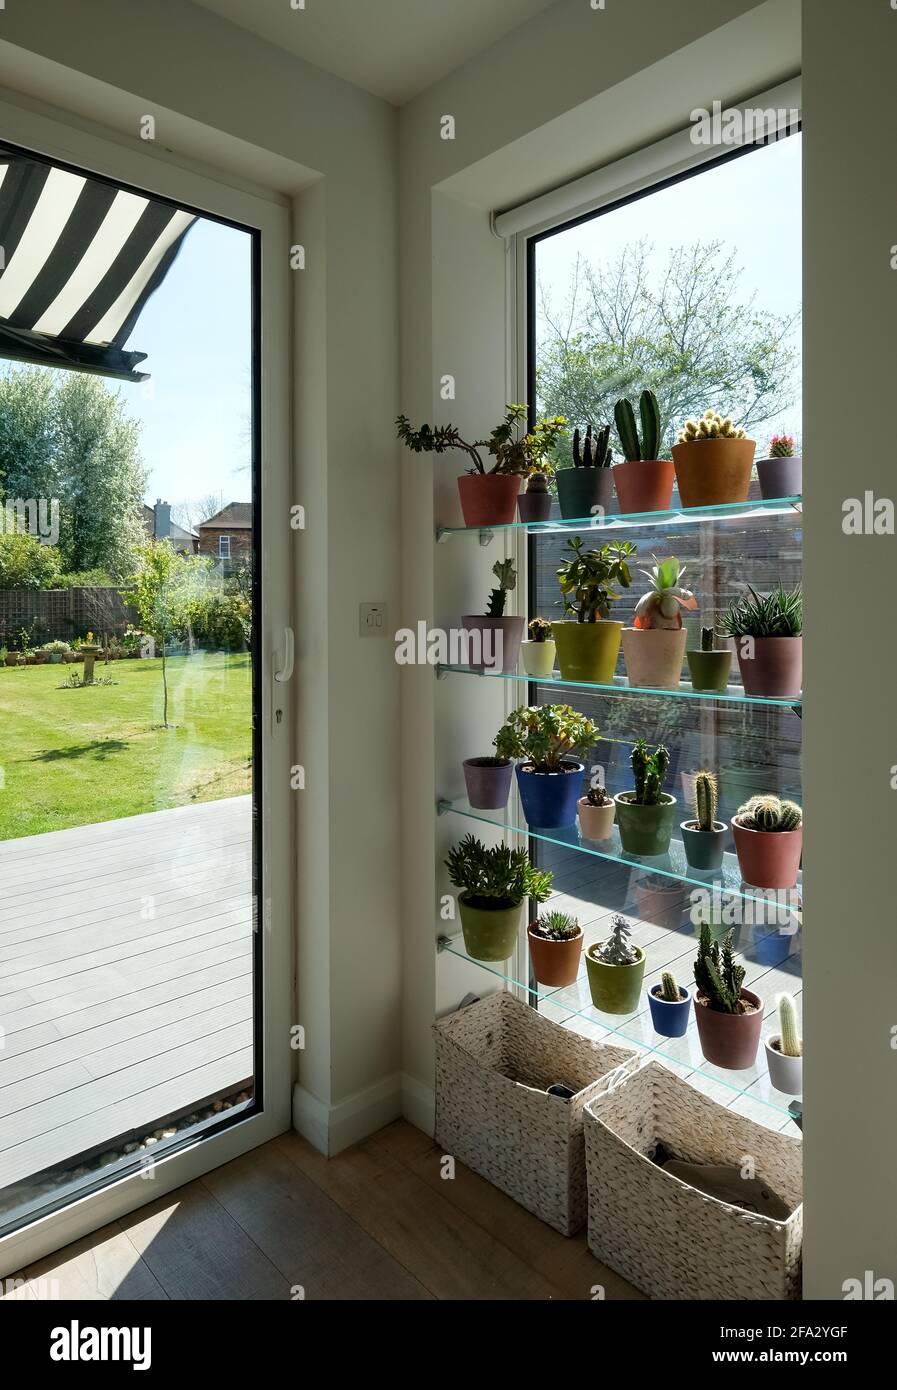 Pentole di cactus e succulenti esposte di fronte ad un'alta finestra lounge, che si affaccia su un giardino. Le pentole sono dipinte a mano in vernice sfida Annie Sloan Foto Stock